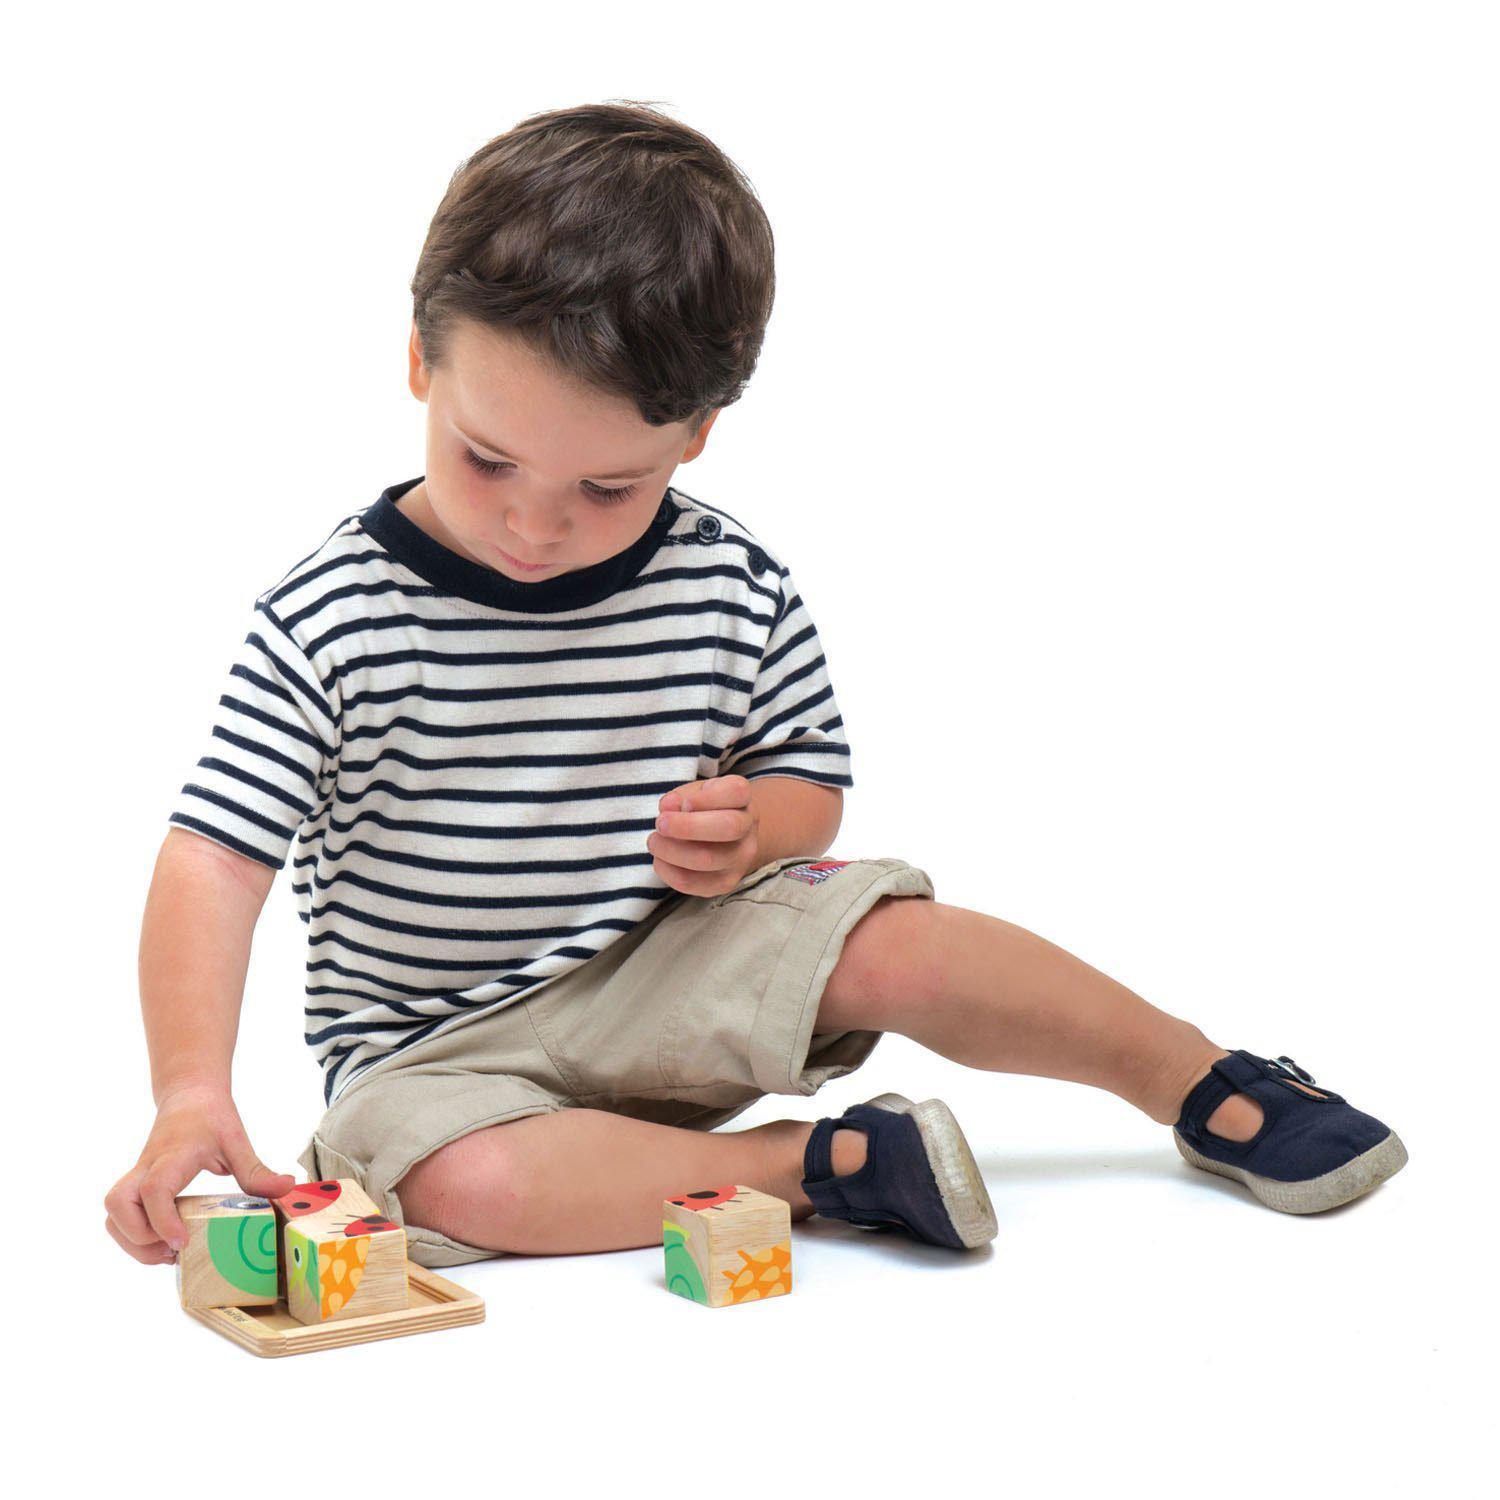 Oktató illusztrált kockák, prémium minőségű fából - Baby Blocks - 5 darab - Tender Leaf Toys-Tender Leaf Toys-4-Játszma.ro - A maradandó élmények boltja